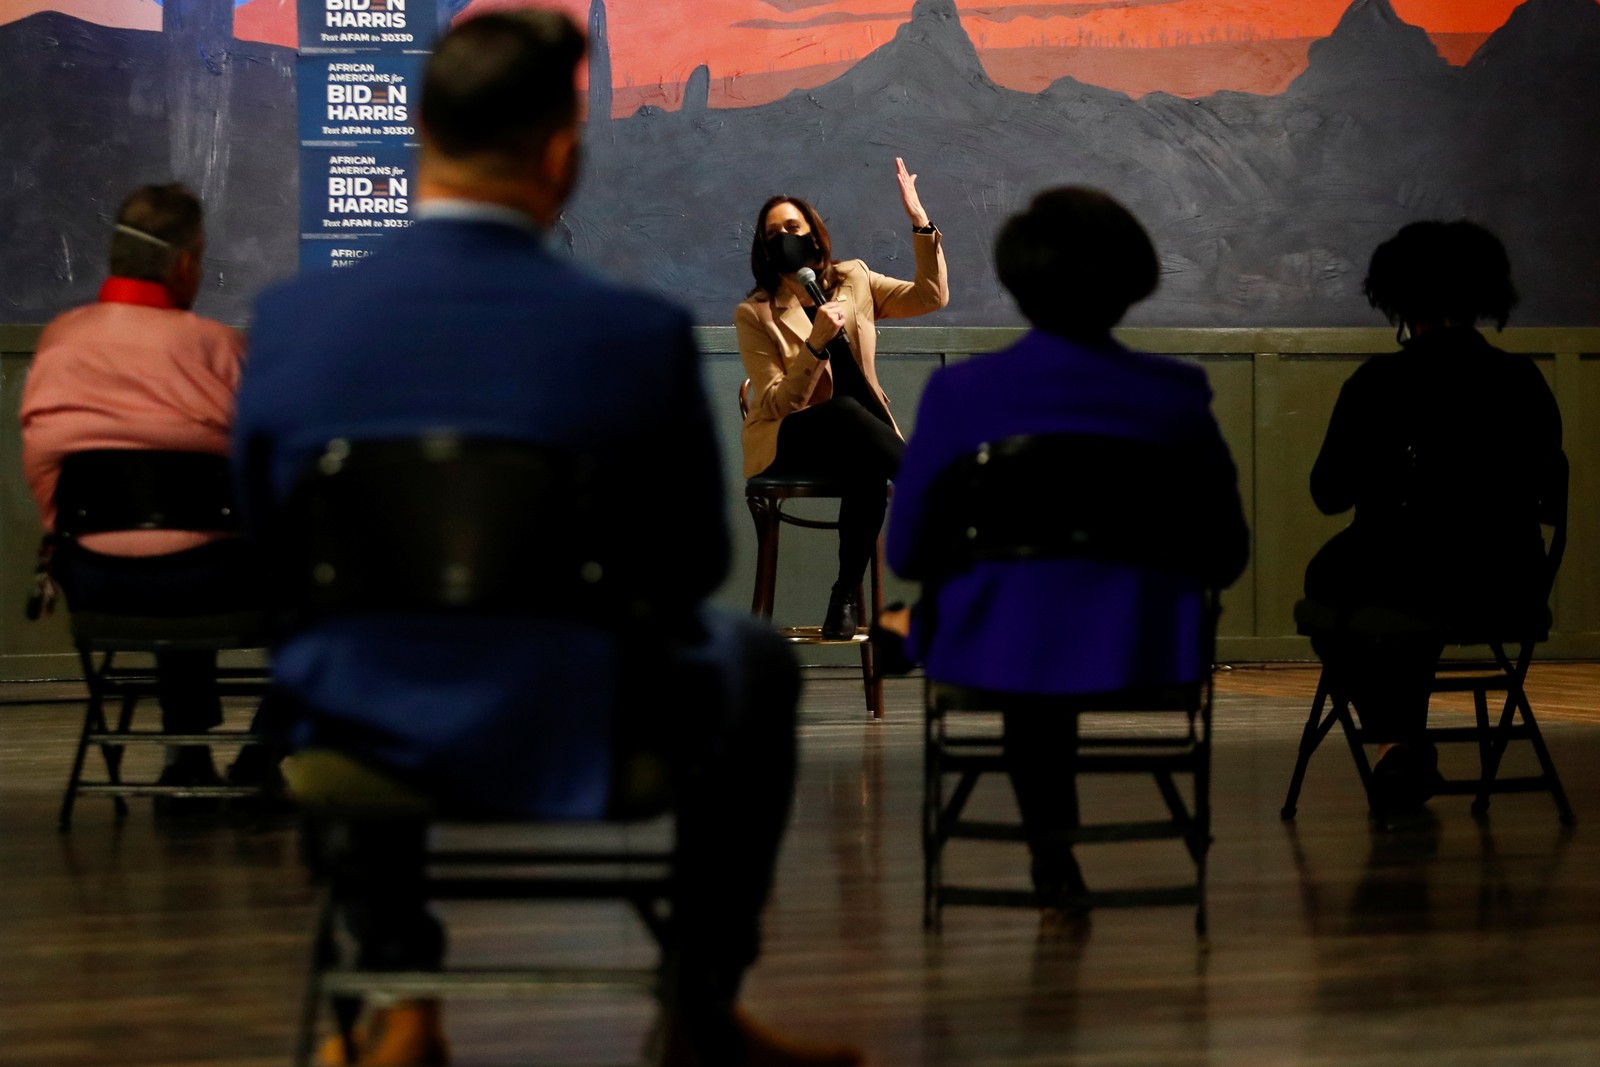 Harris conversa com apoiadores durante um evento de campanha em Phoenix, Arizona, em 28 de outubroREUTERS